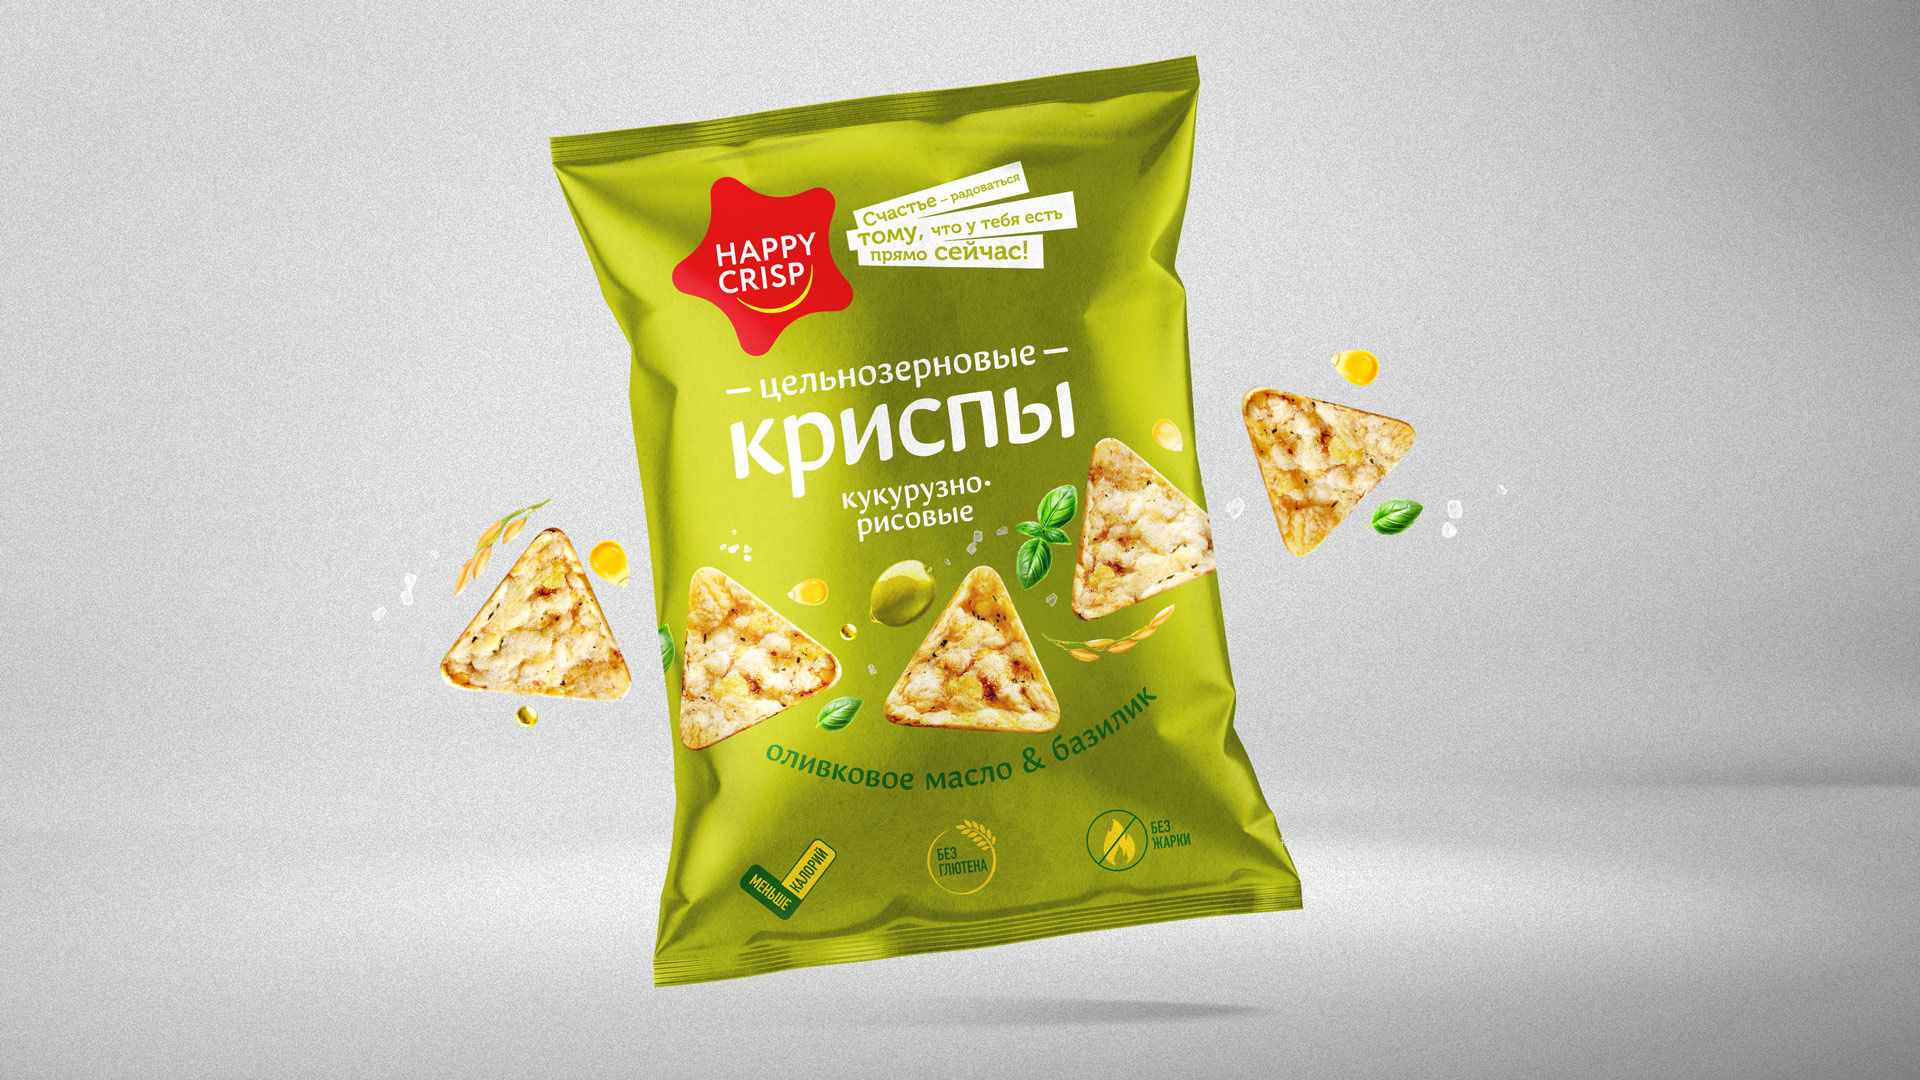 Дизайн упаковки чипсов Happy Crisp